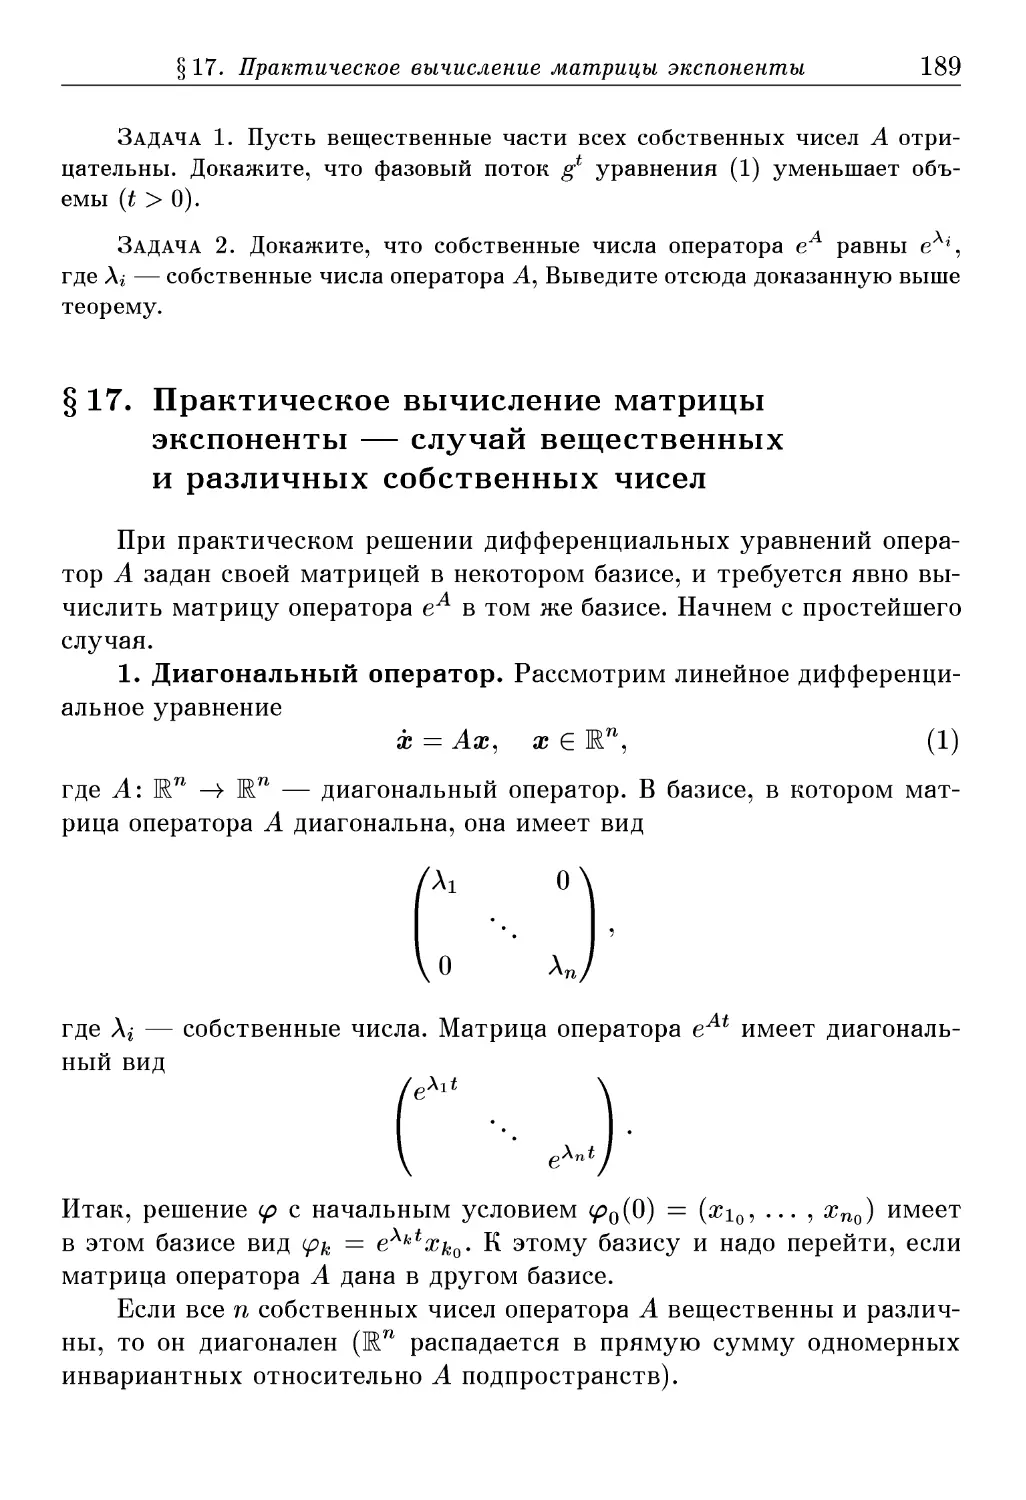 § 17. Практическое вычисление матрицы экспоненты — случай вещественных и различных собственных чисел